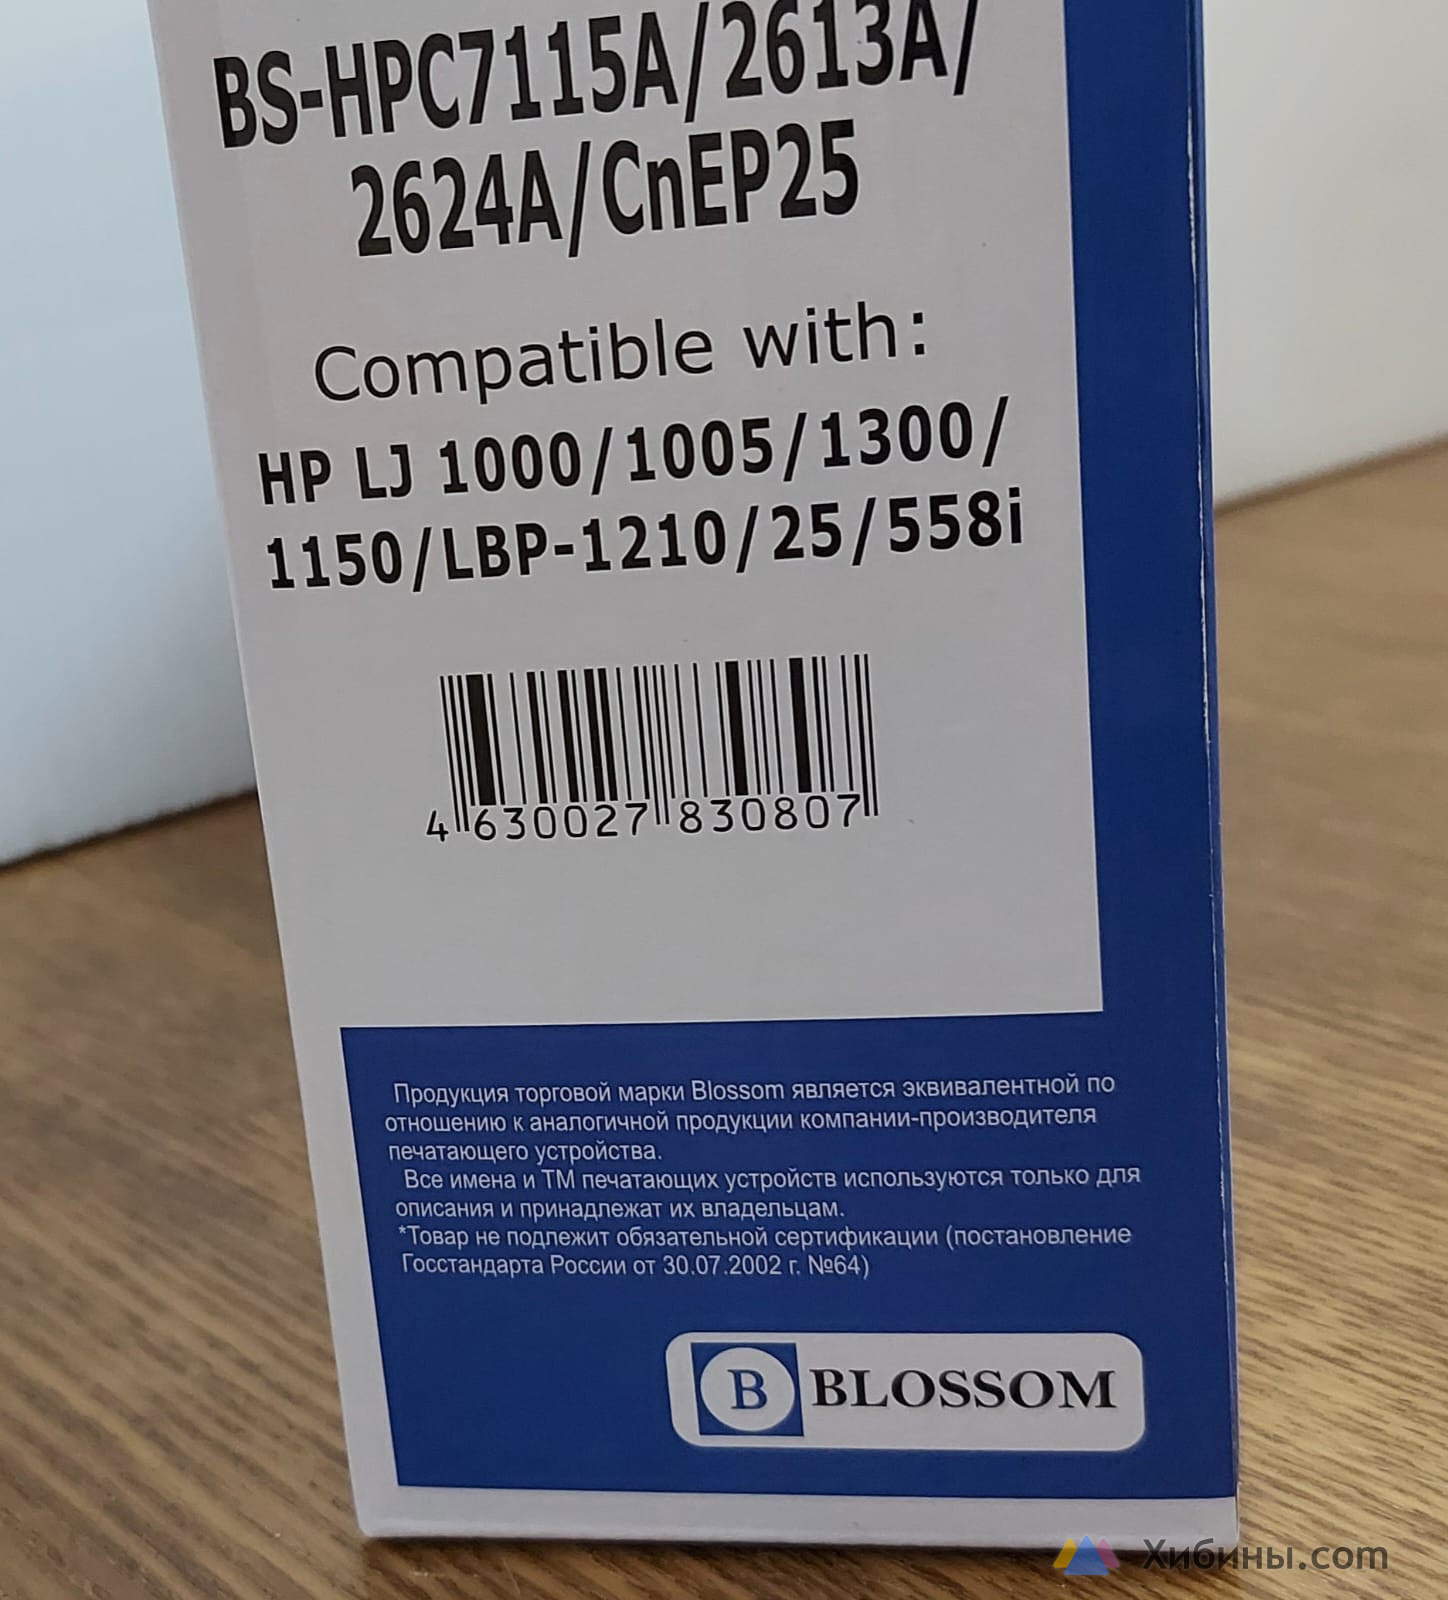 Лазерный картридж Blossom C7115A/C2613A/C2624A/EP-25, черный